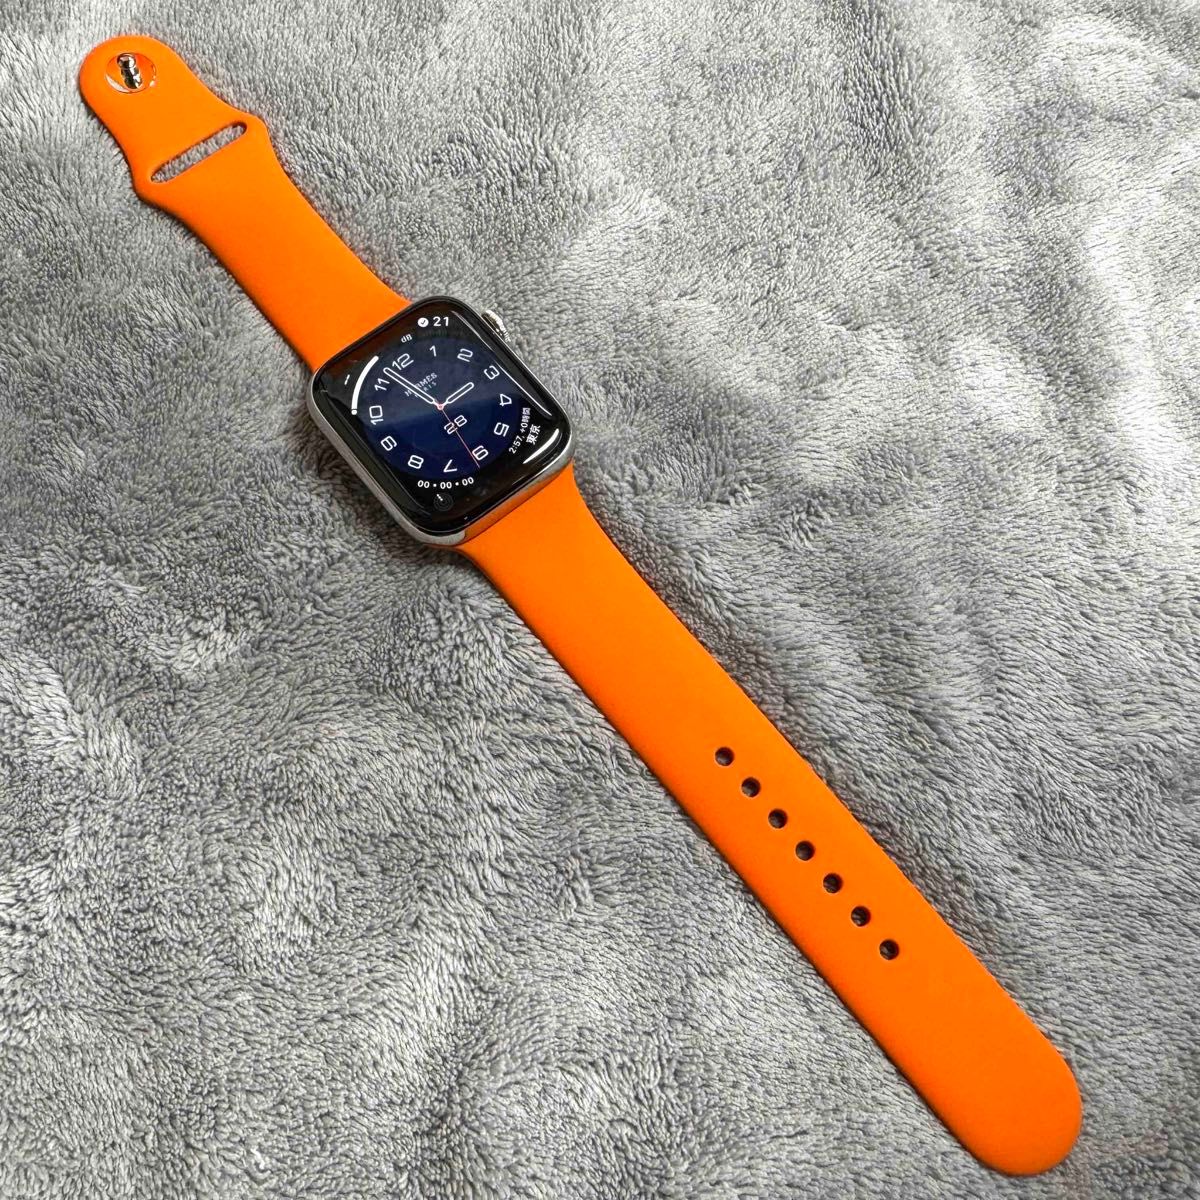 無料配達 新品 Apple Watch スポーツバンド 42-45cm対応 HERMES ラバー